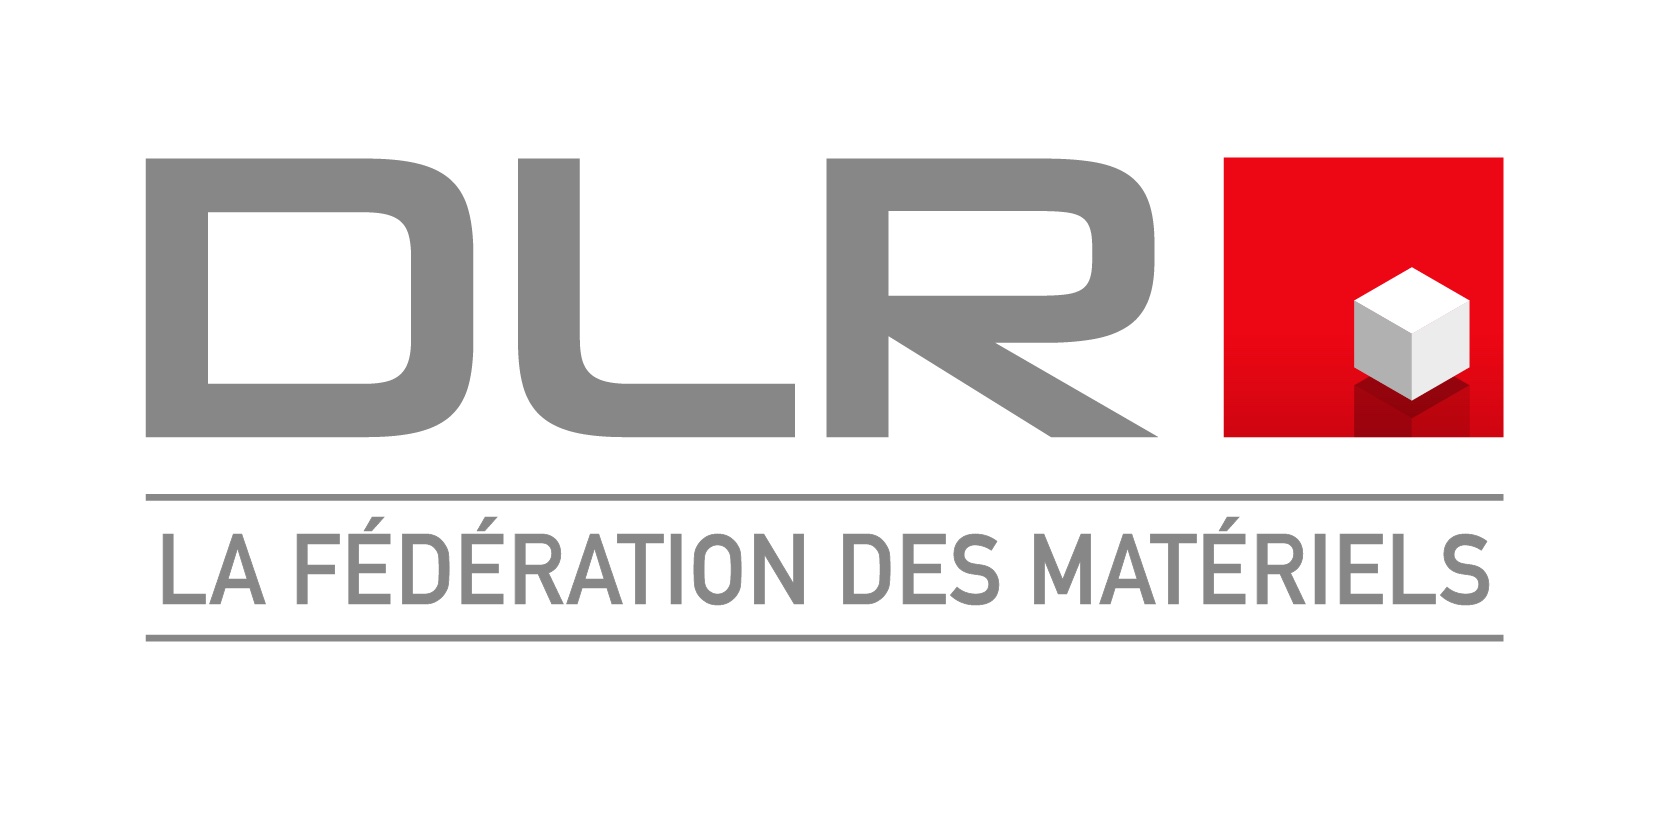 La Fédération DLR actualise son logo